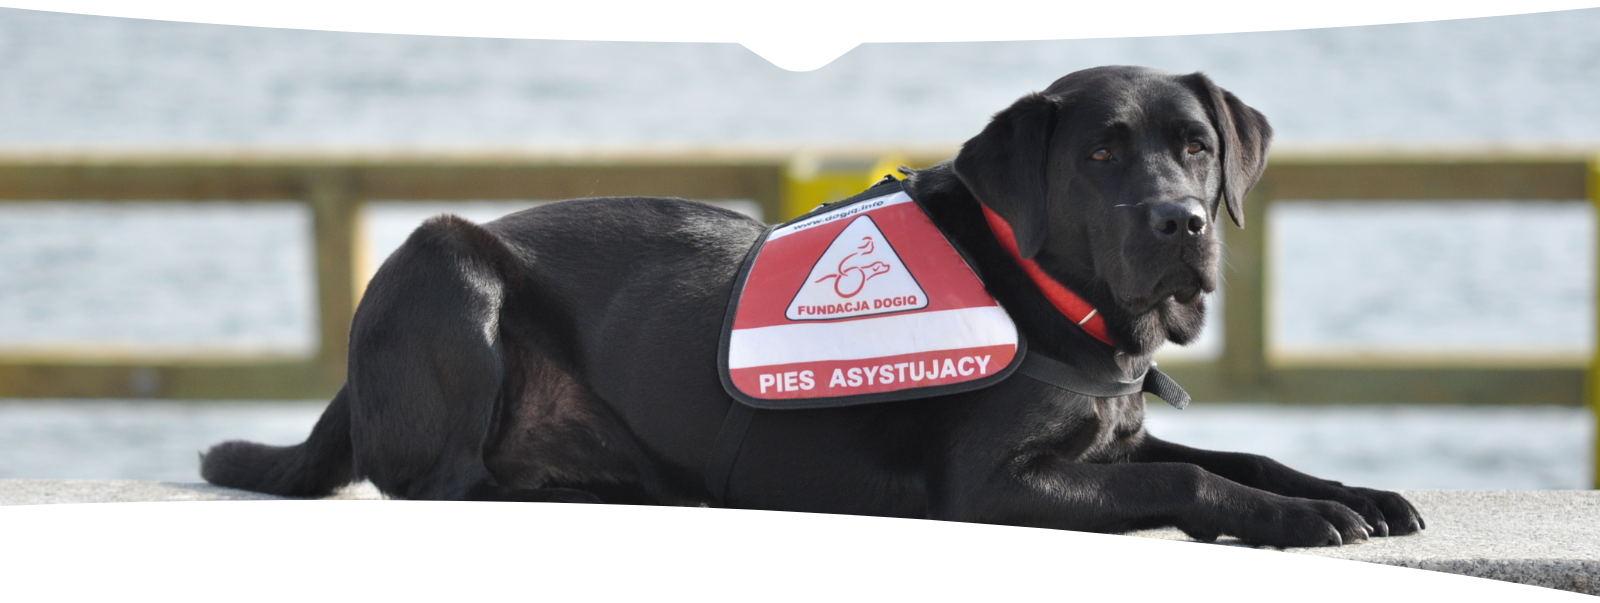 Czarny pies- labrador w uprzęży z napisem pies asystujący i logotypem Fundacji DOGIQ znajduje się w pozycji leżącej. W tle - zbiornik wodny. 